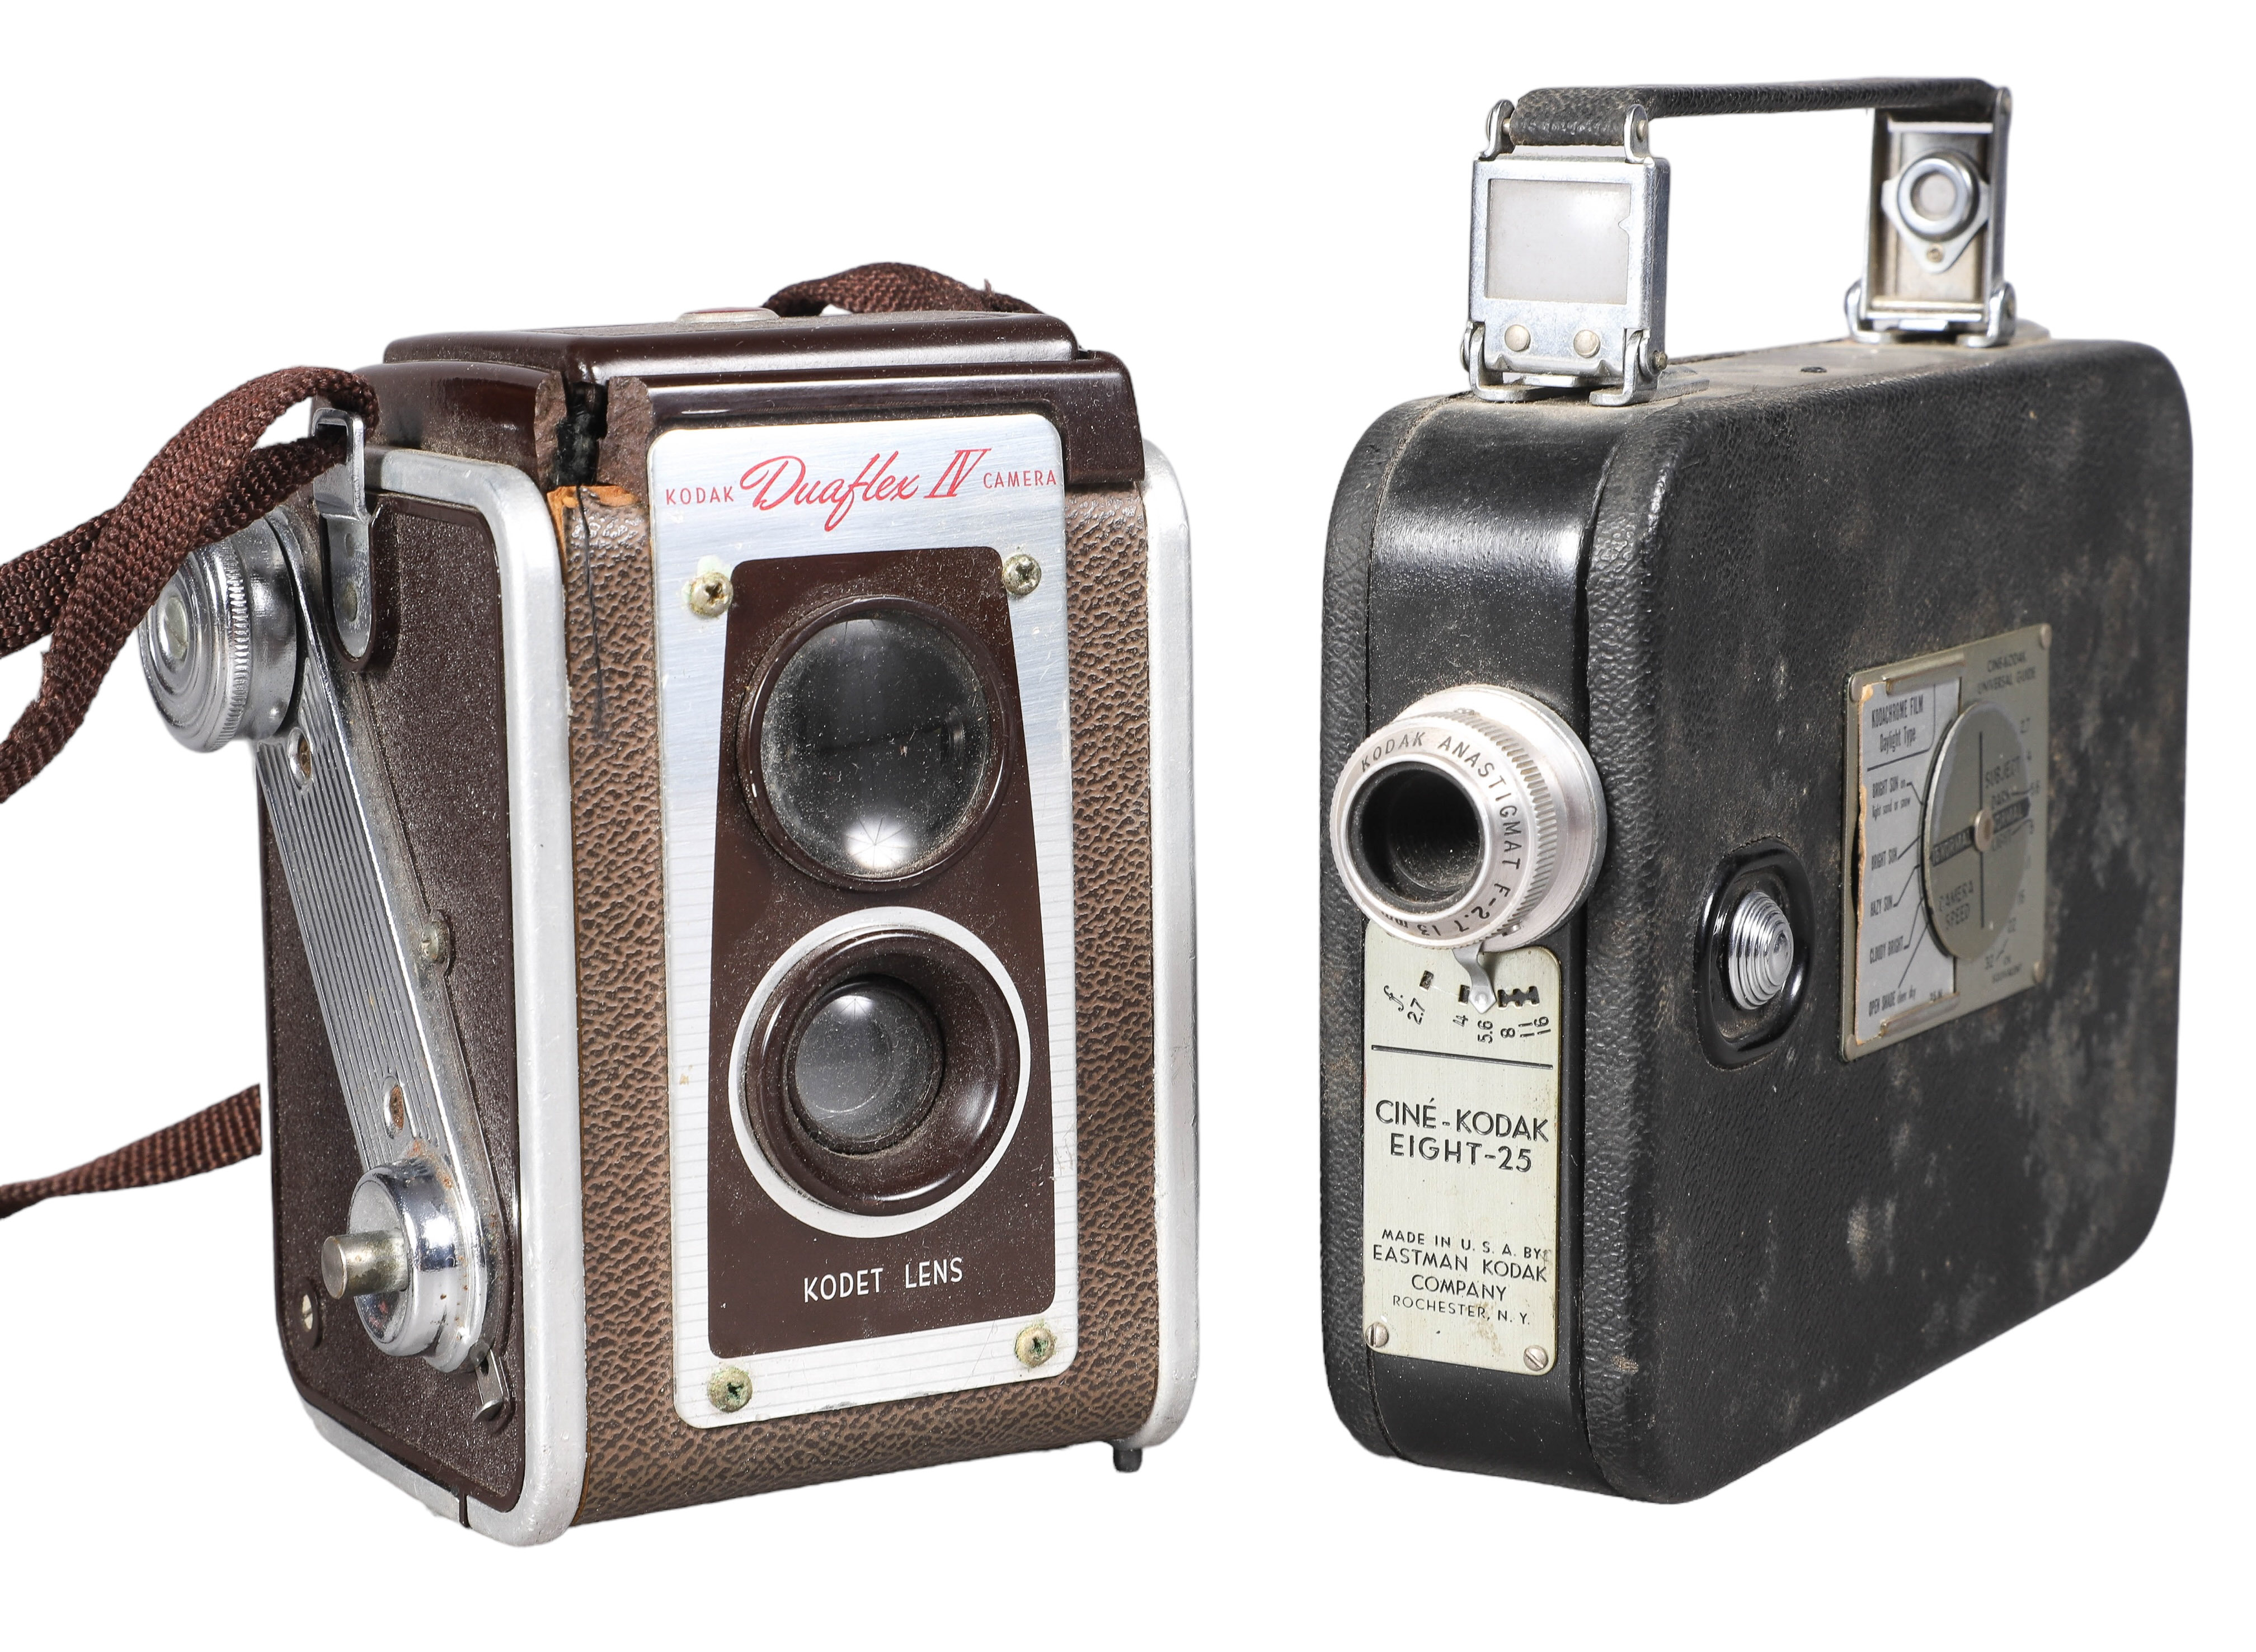  2 Eastman Kodak cameras c o 2e1ed6